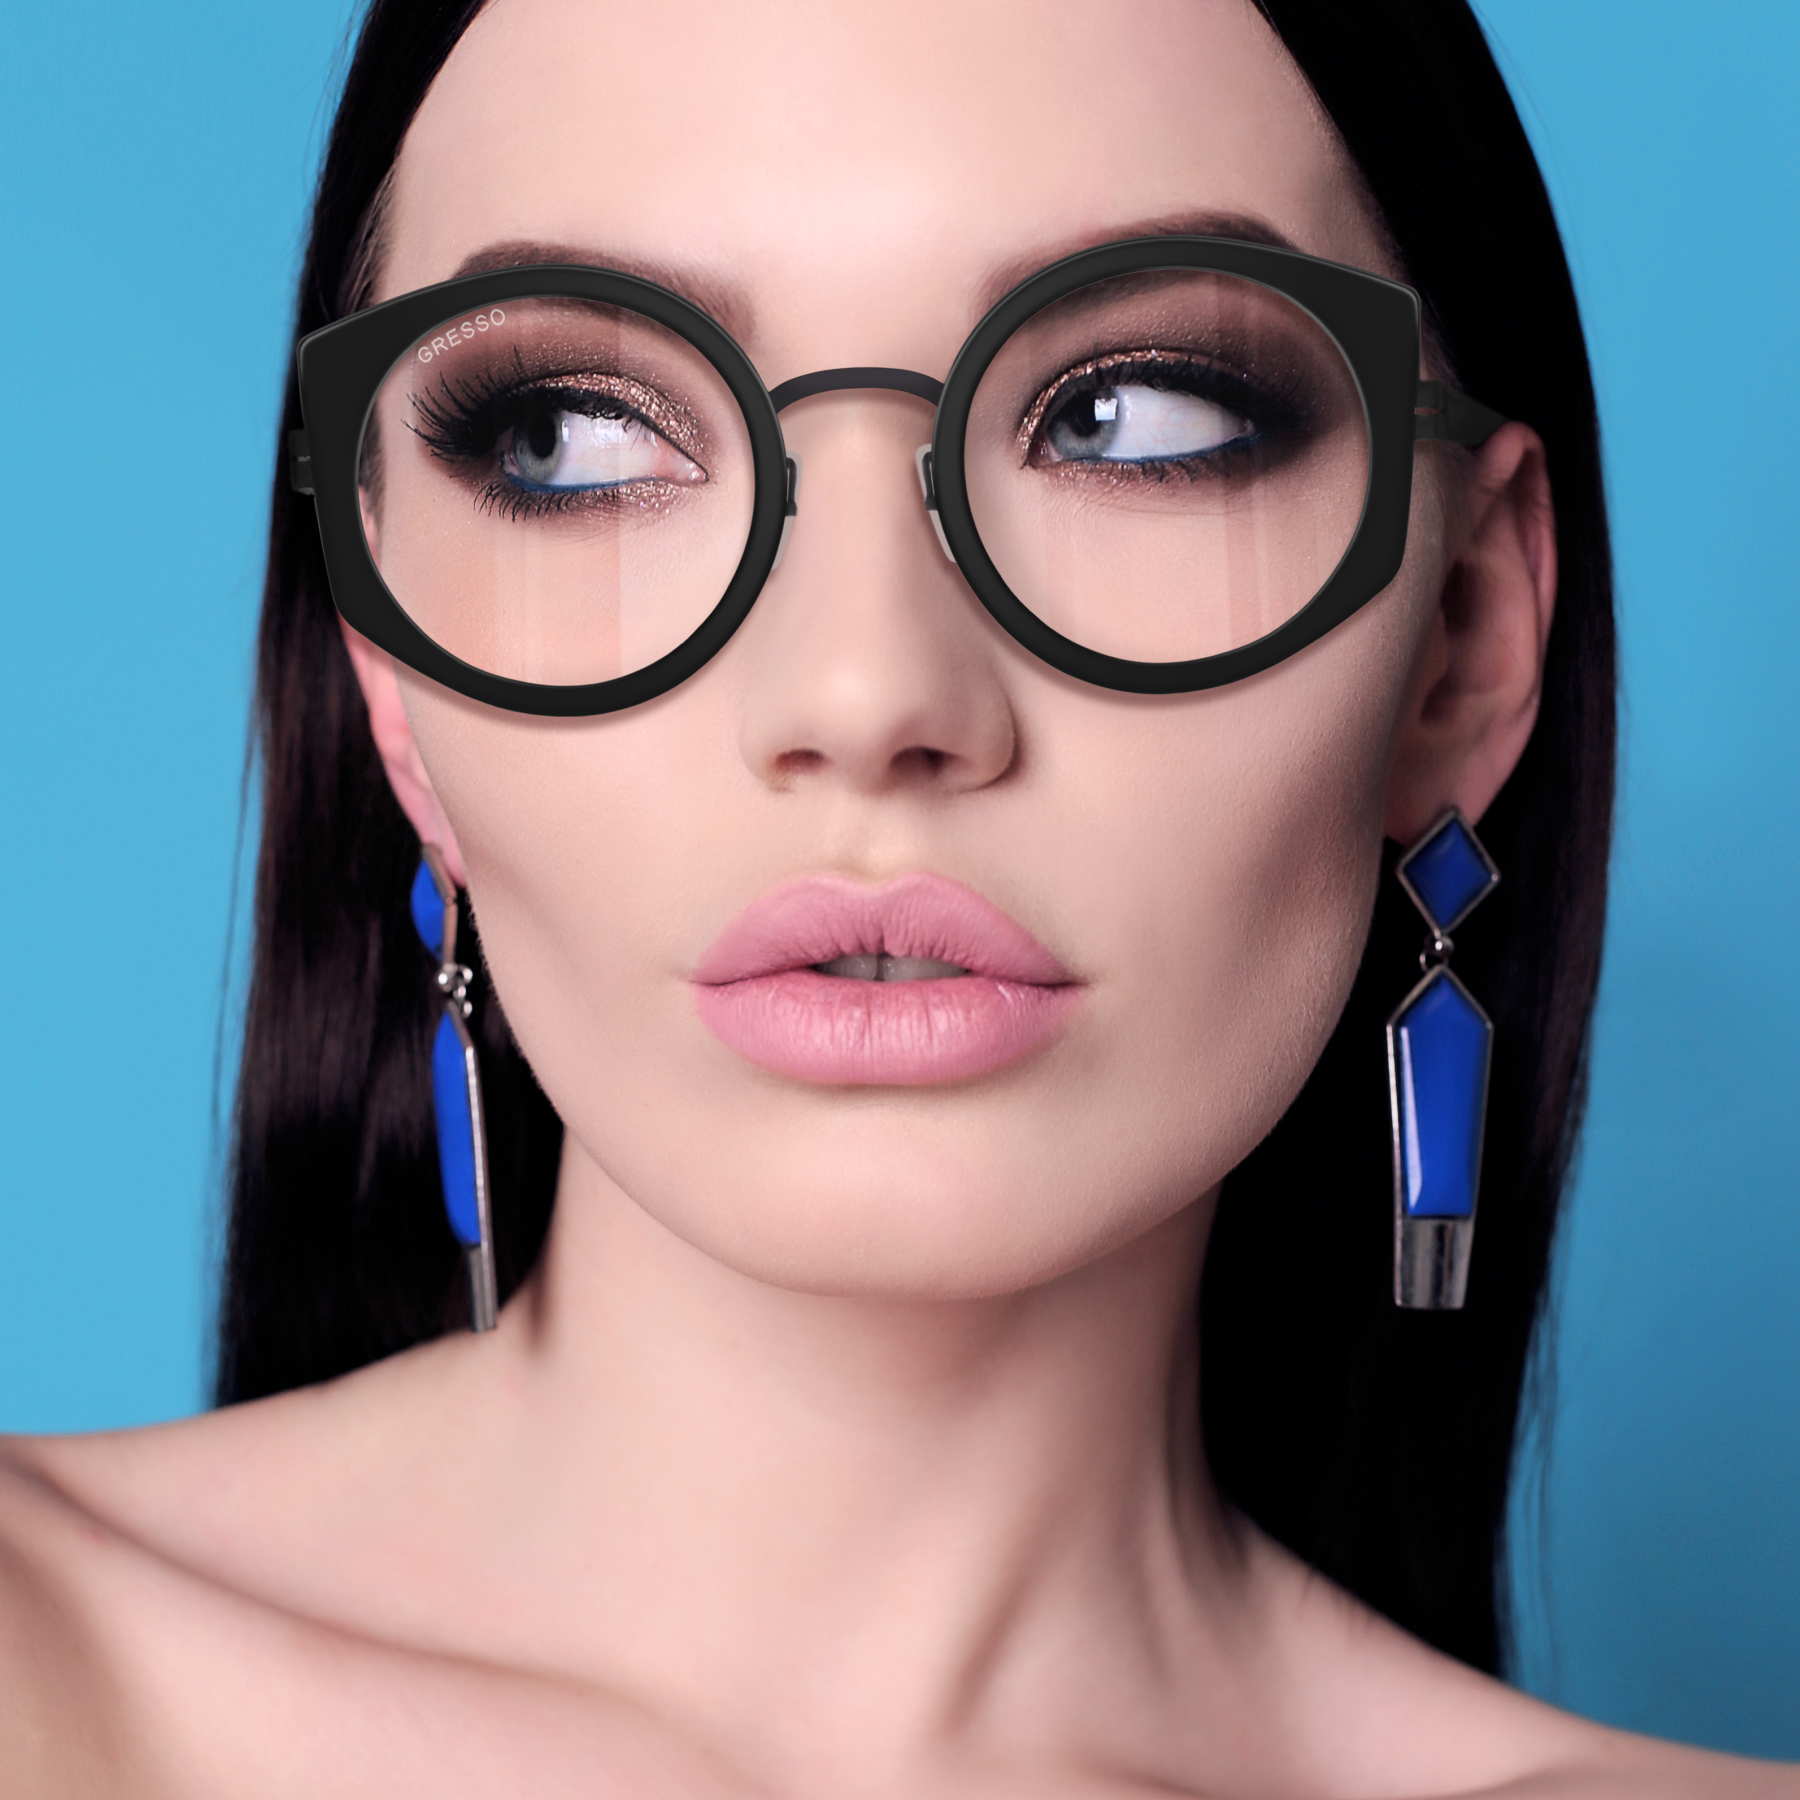 Купить онлайн или в салонах оптики в Москве и Санкт-Петербурге женские титановые очки для зрения GRESSO Olivia с диоптриями, изготовленные по вашему рецепту. Воспользуйтесь услугой бесплатной проверки зрения и консультацией опытного врача-офтальмолога.